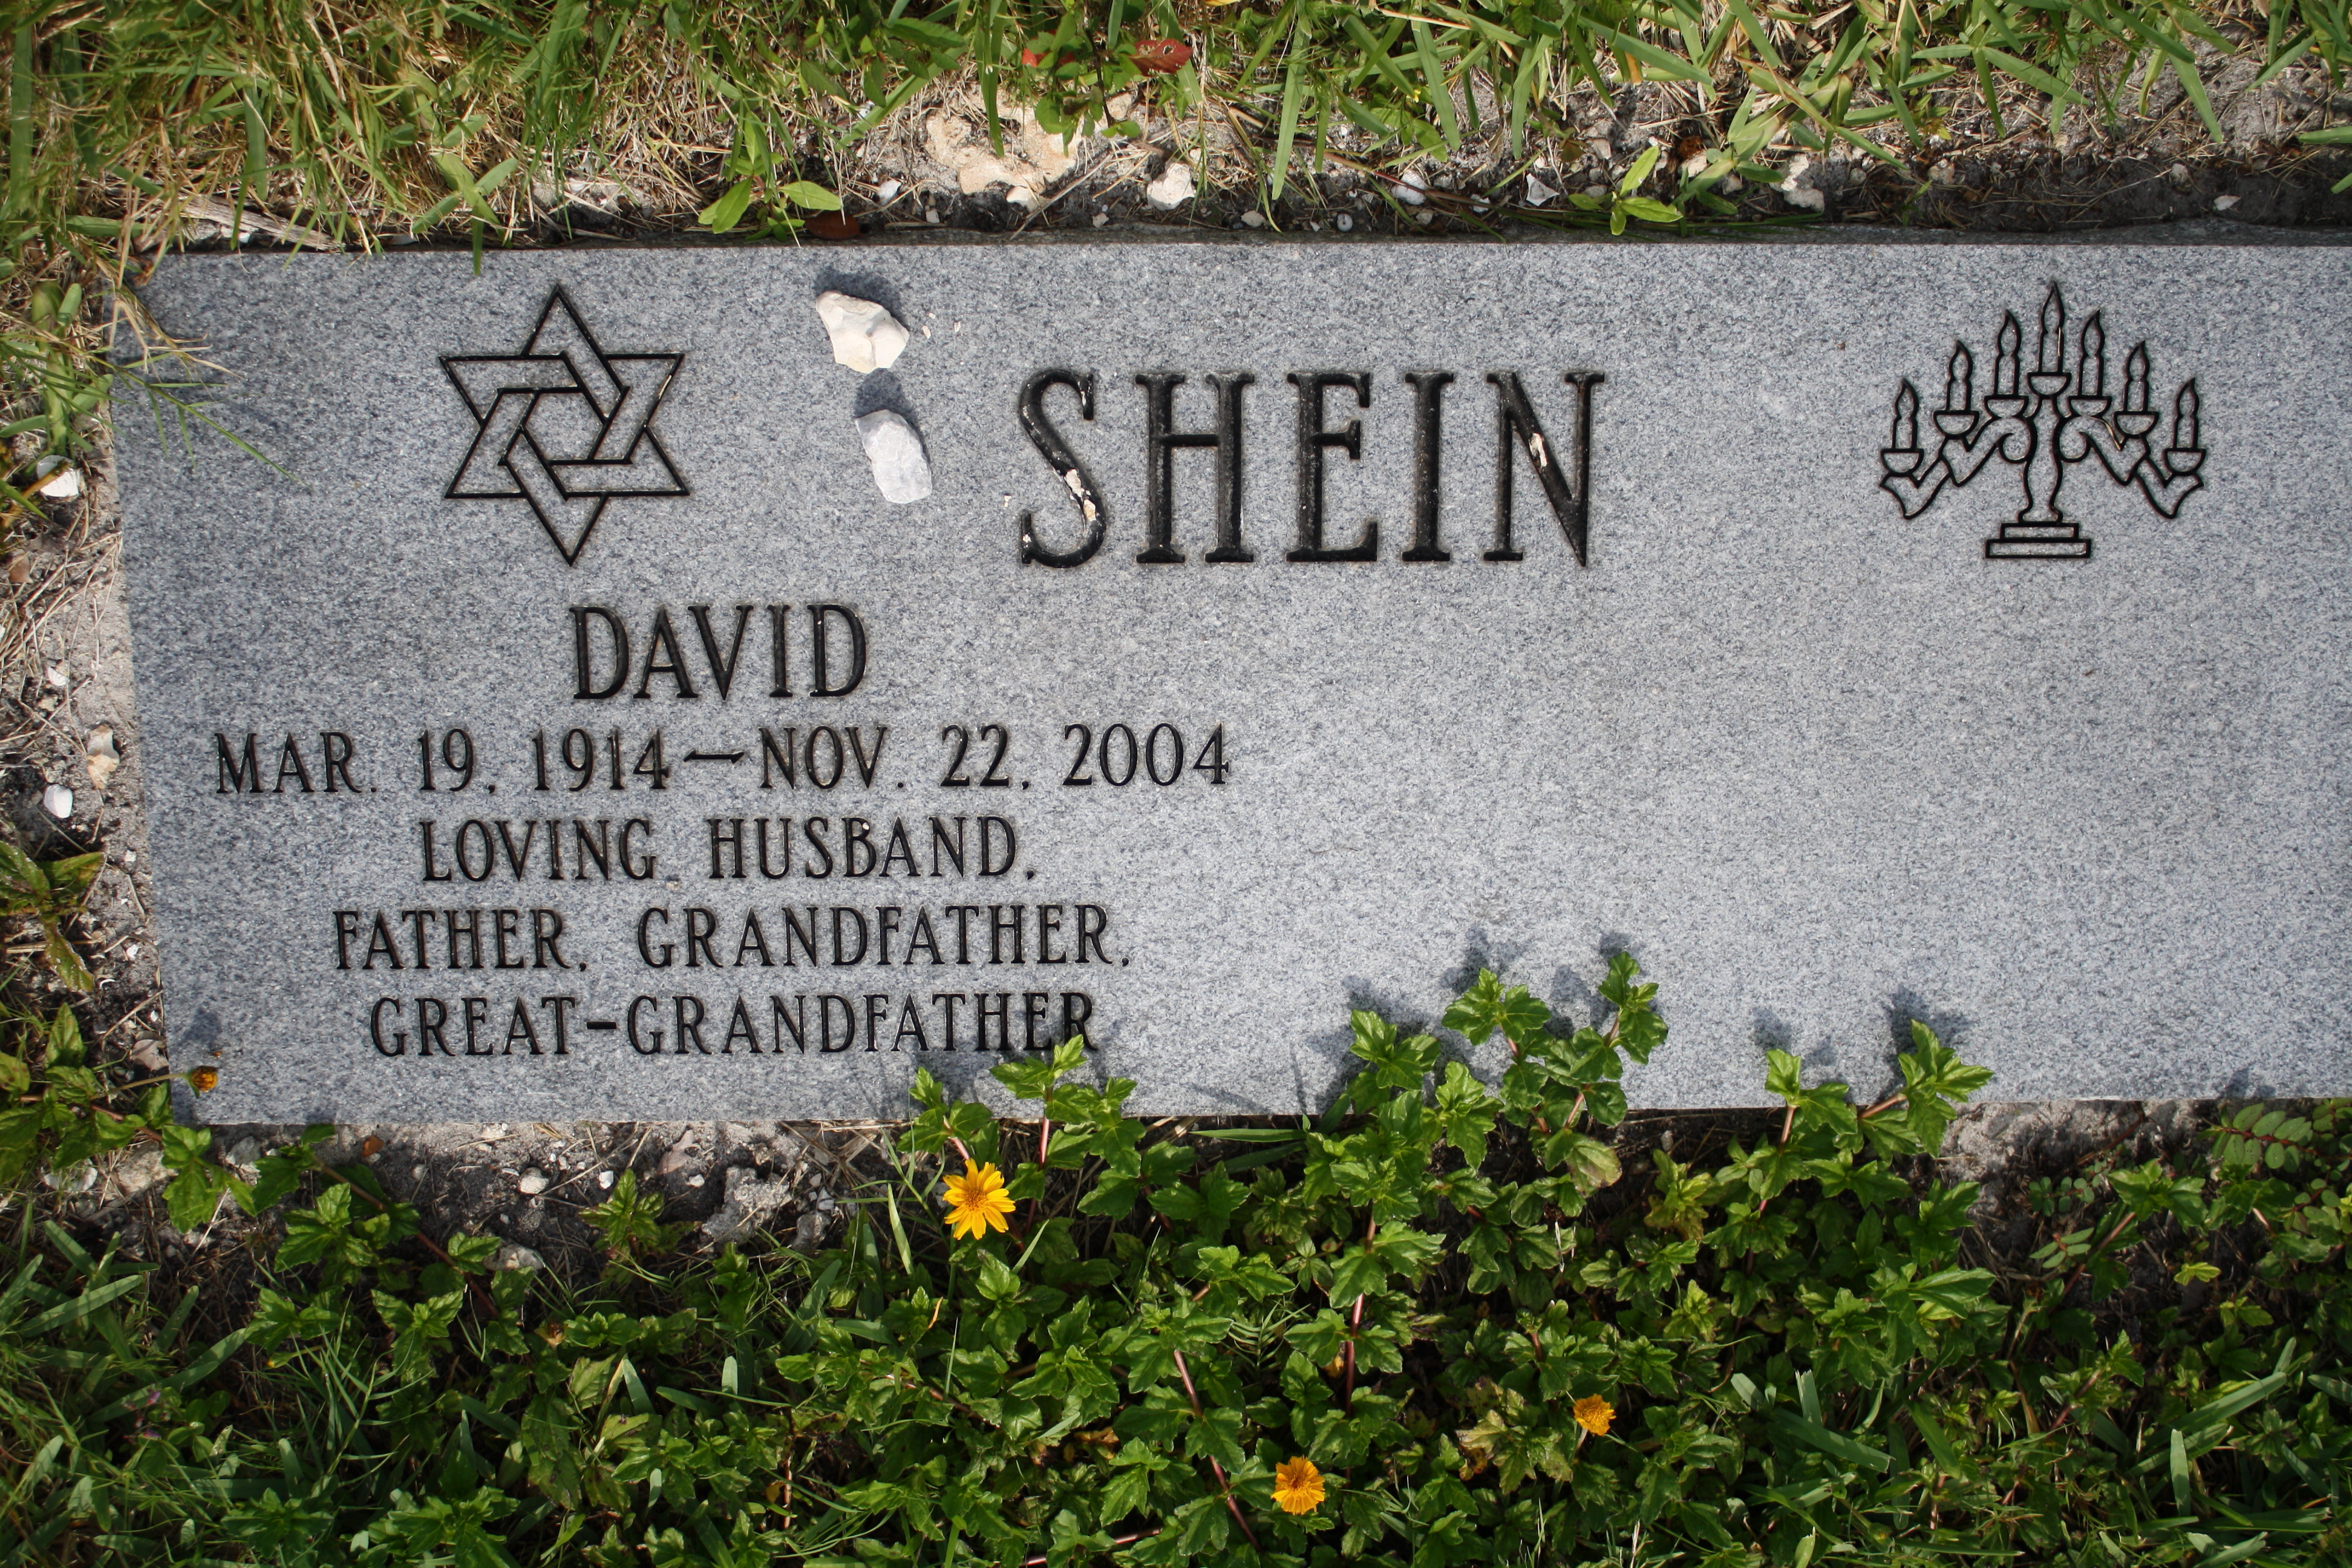 David Shein